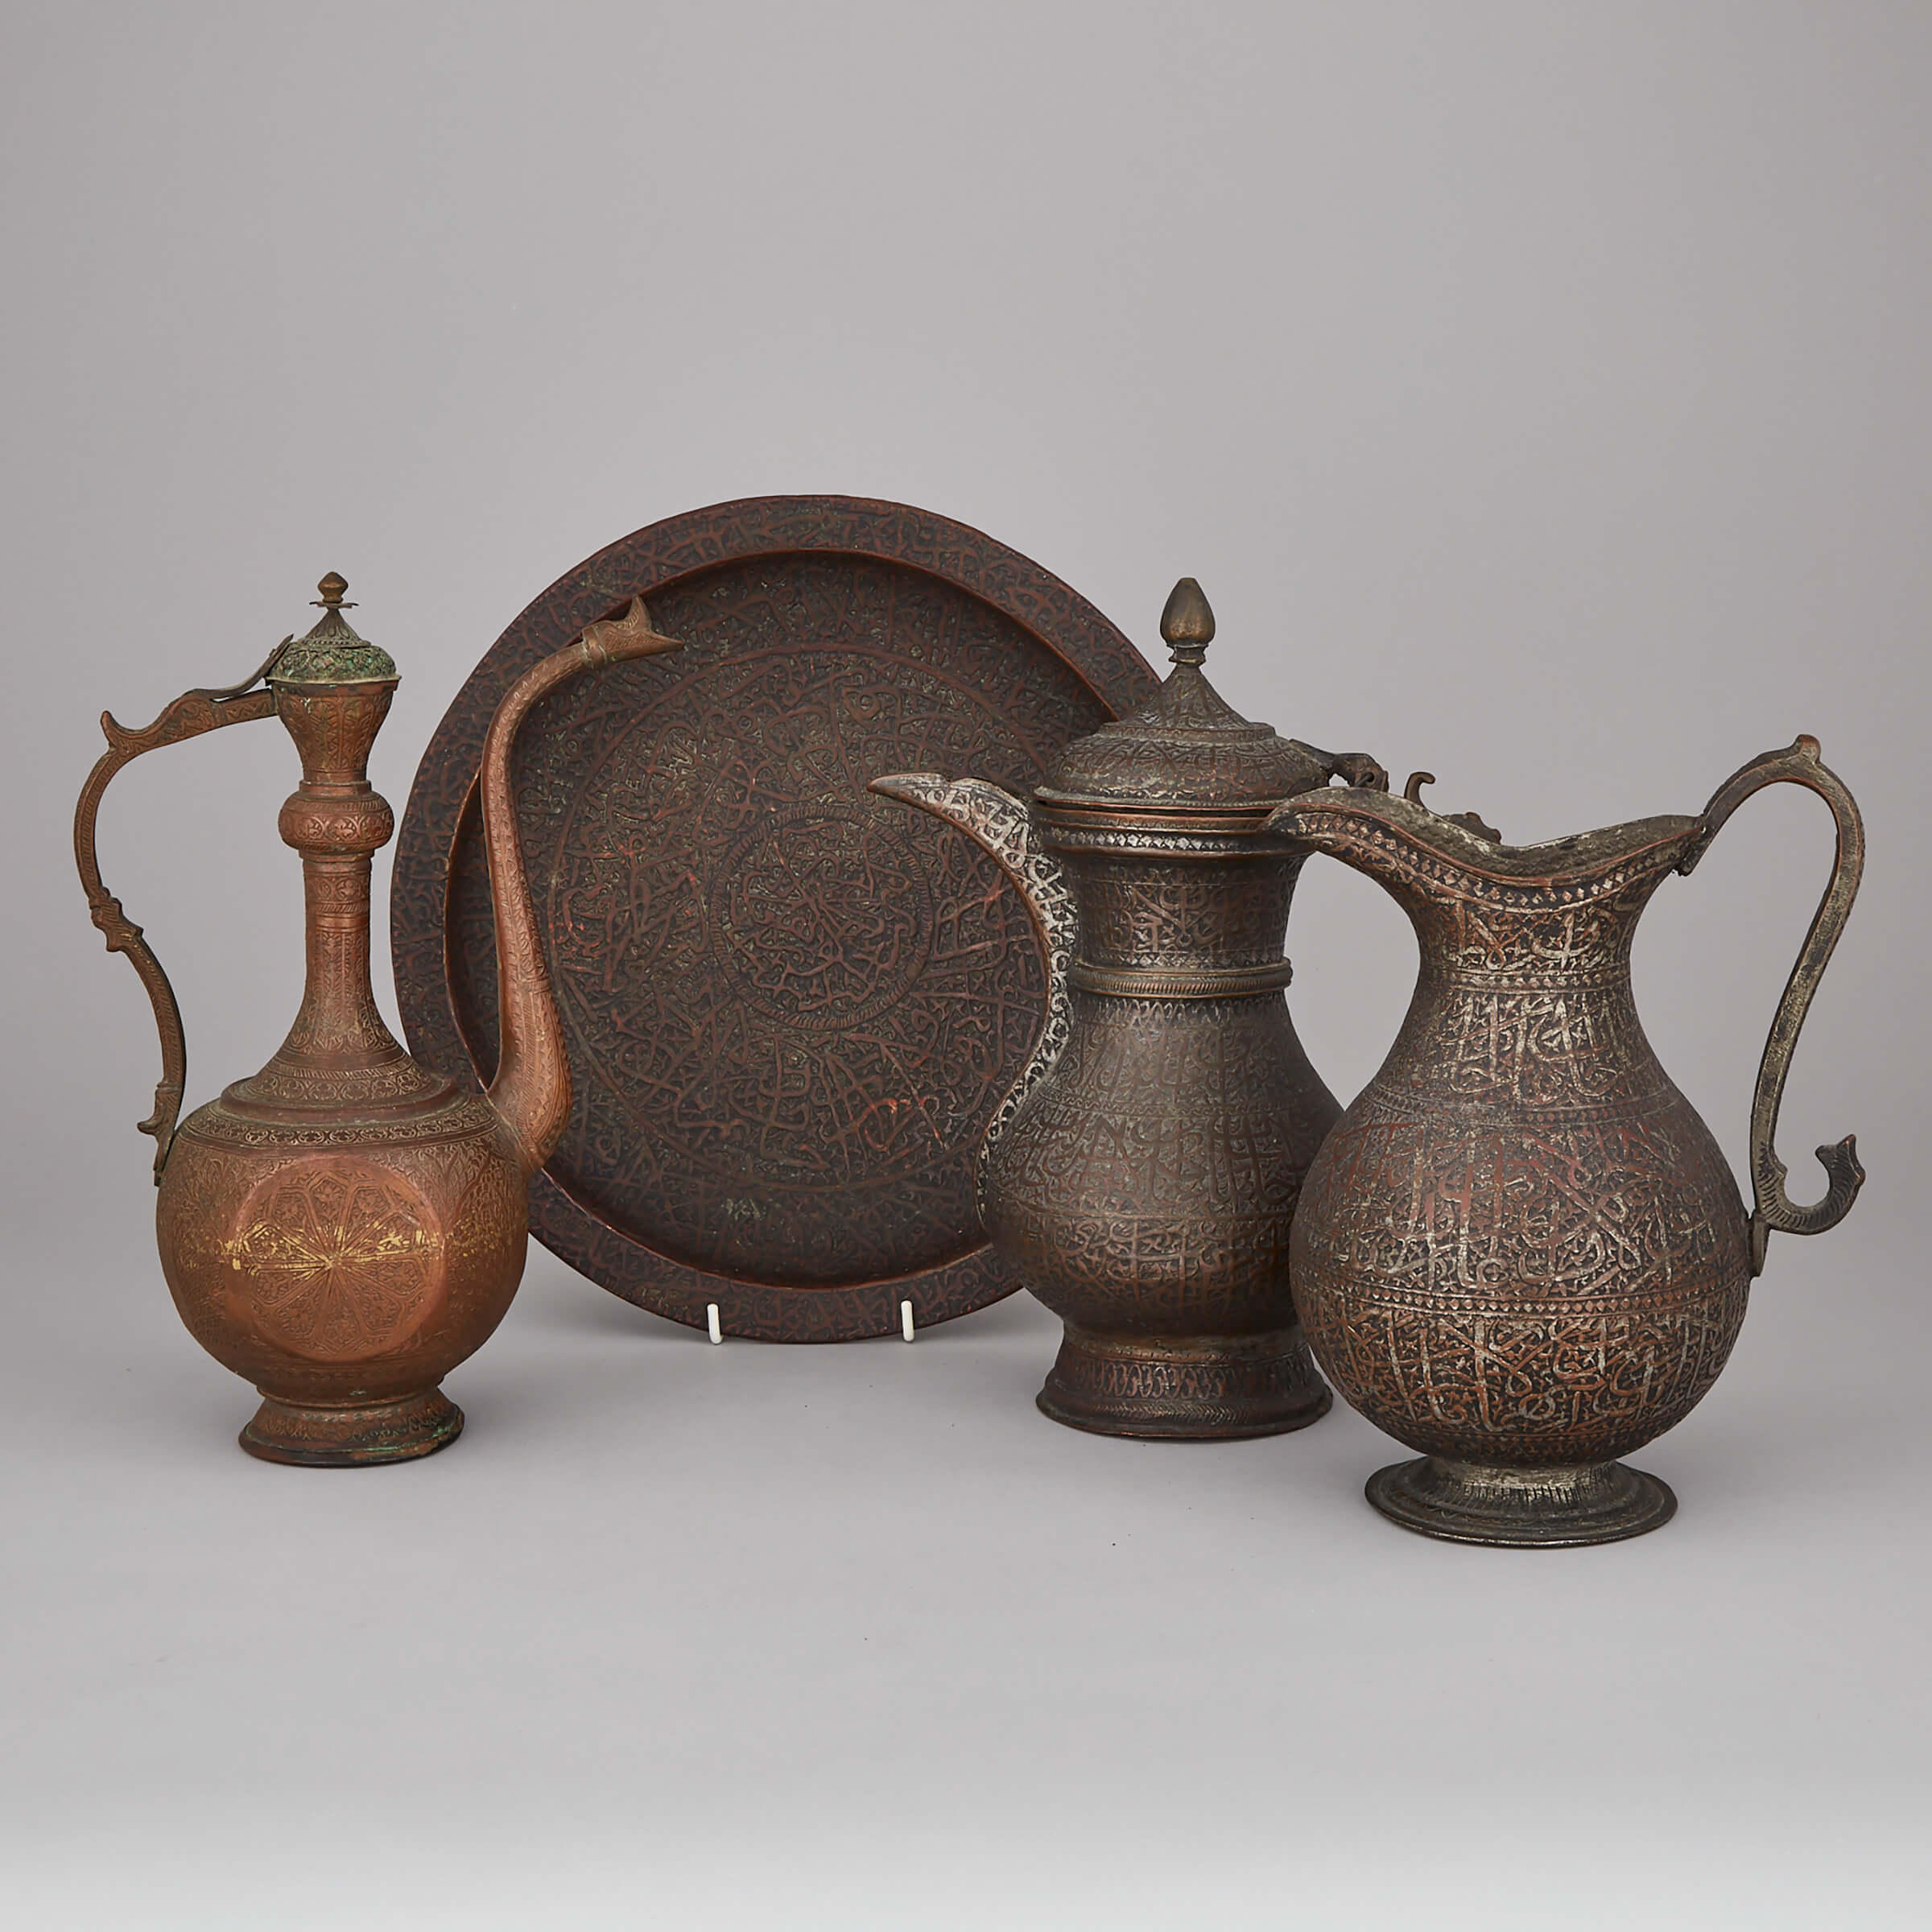 Four Persian Copper Vessels, Qajar Dynasty, 19th century